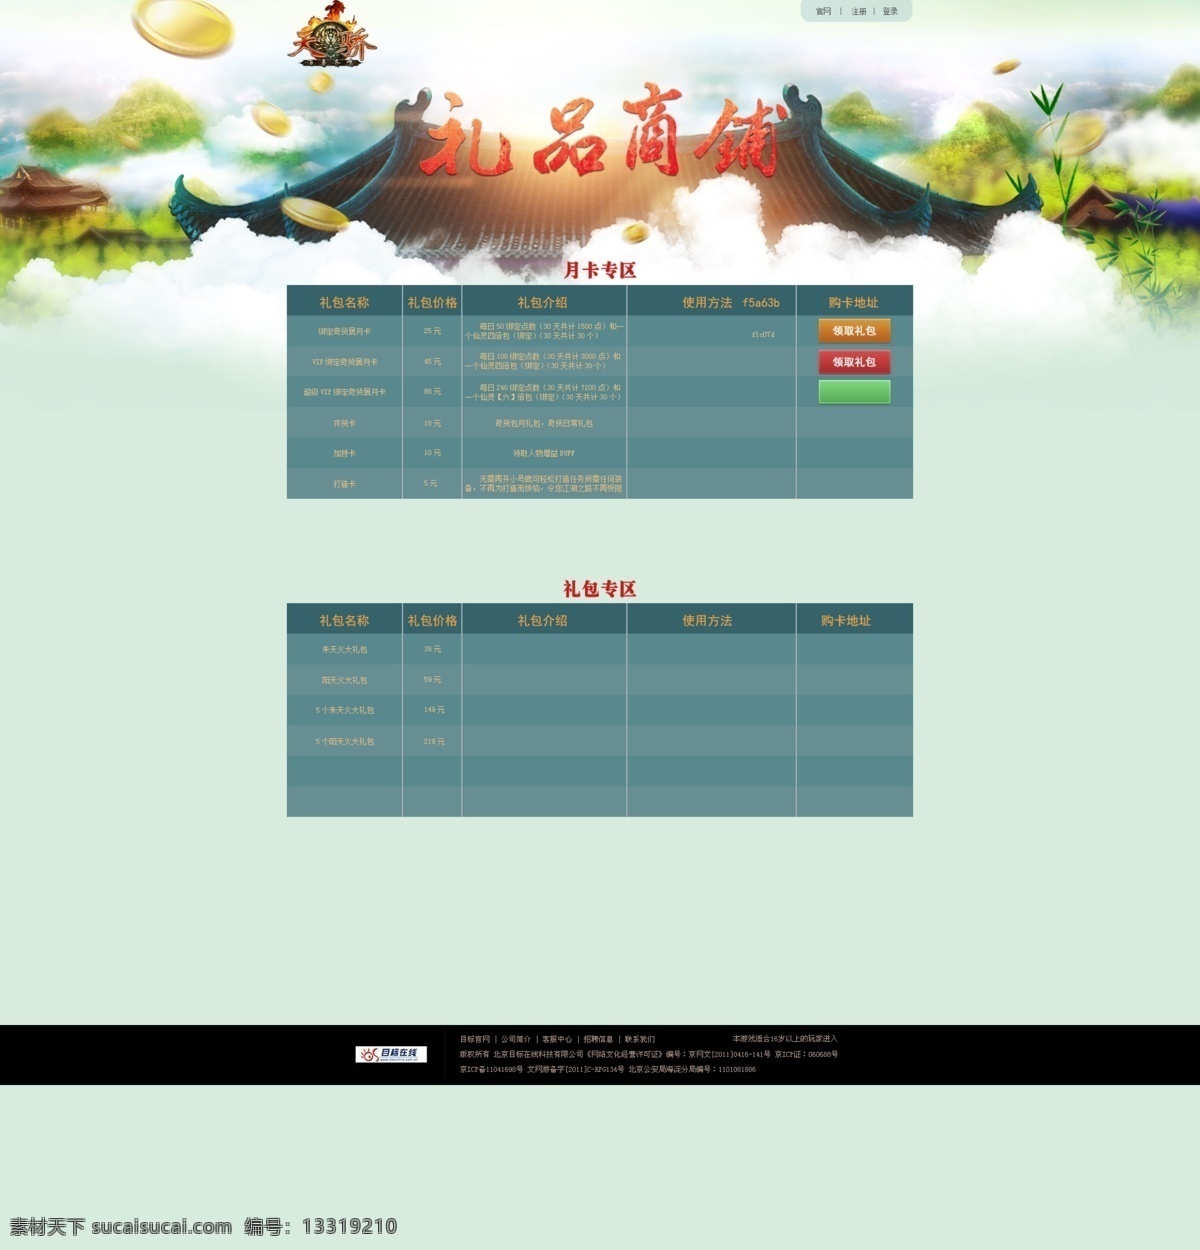 礼品 商城 游戏 页面 背景 表格 场景 风景 金币 蓝色 树 礼品商城 原创设计 原创网页设计